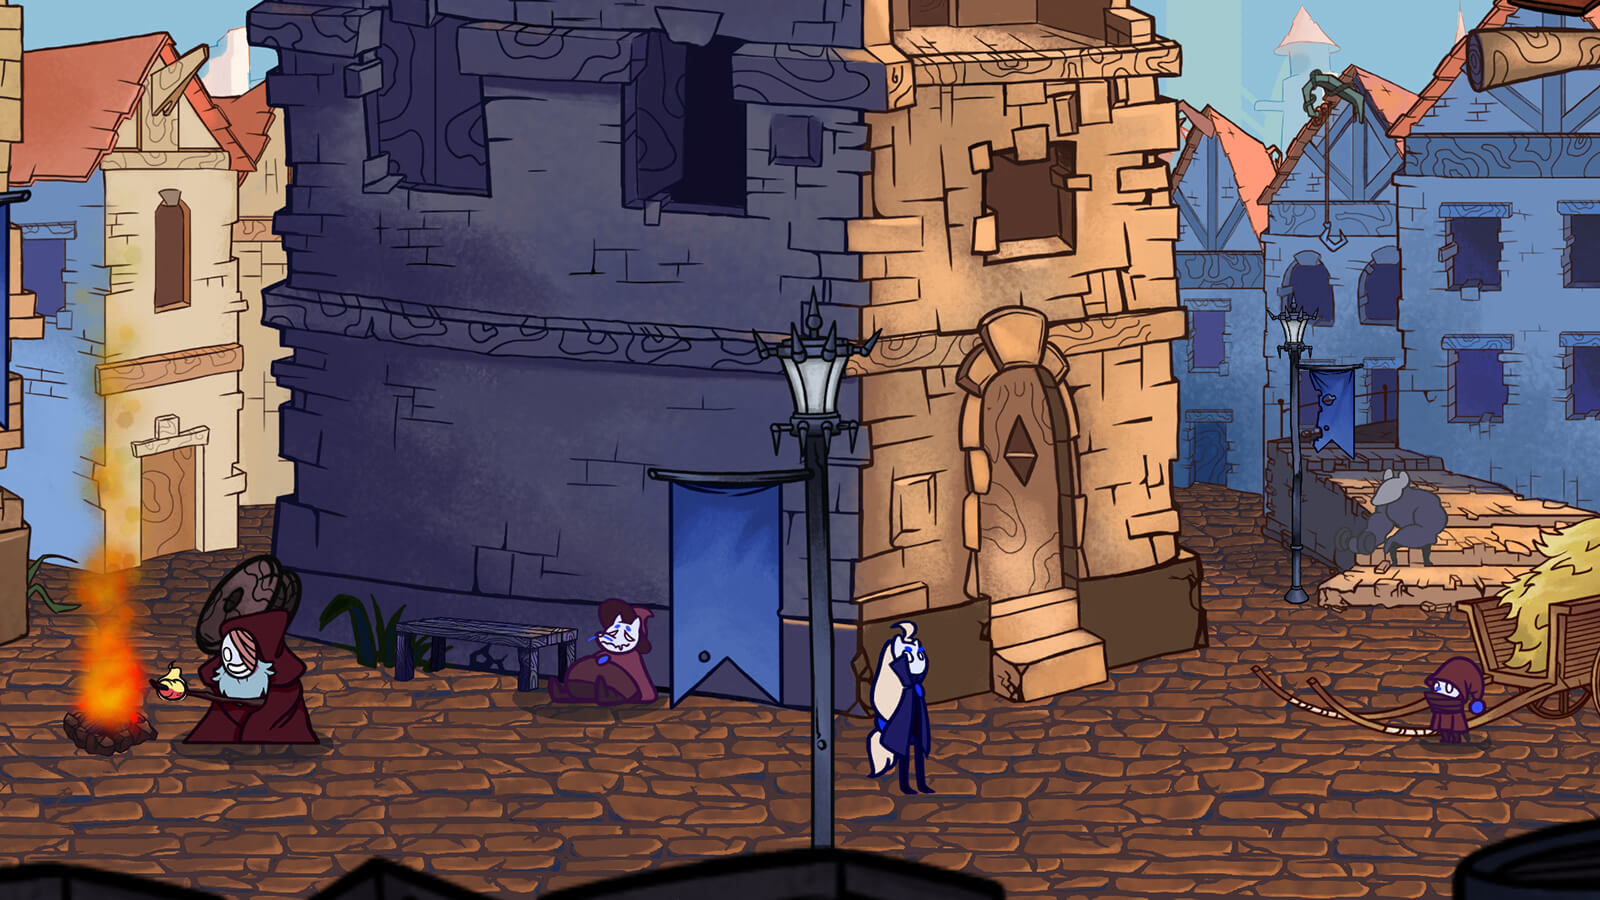 Una escena de pueblo con un personaje junto a una hoguera, otro durmiendo contra un edificio y una rata gigante.